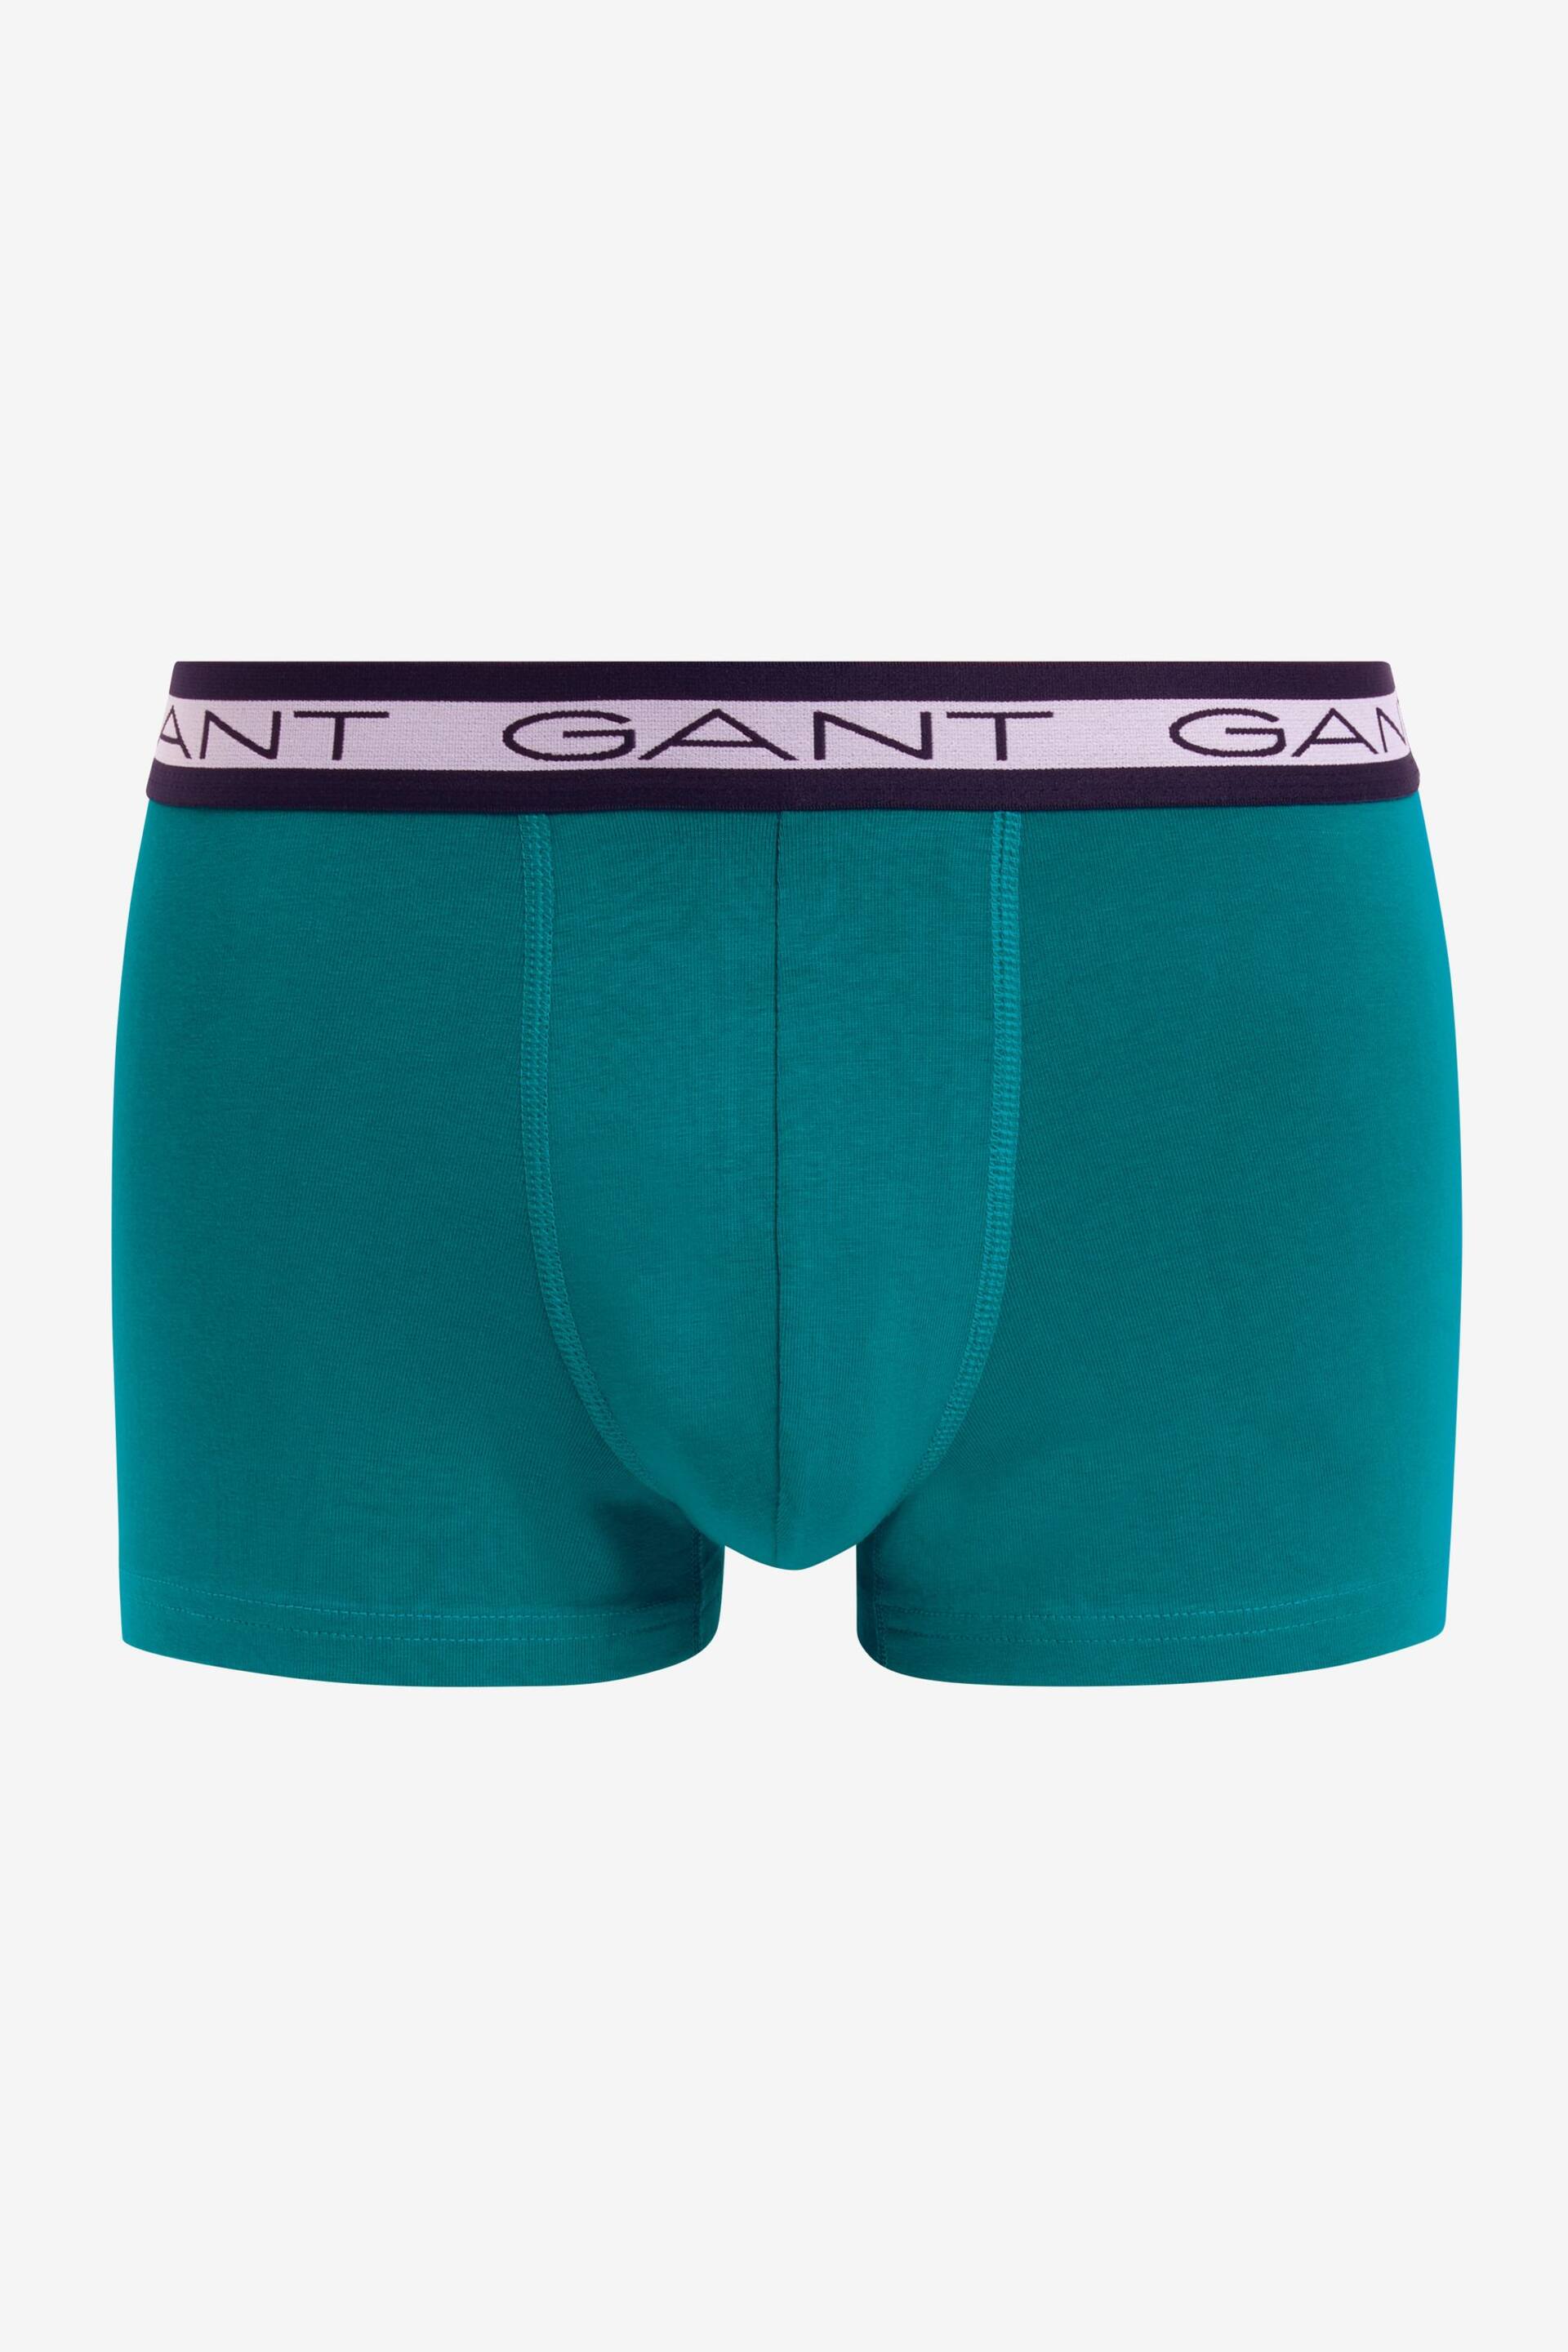 GANT Core Trunks 3 Pack - Image 4 of 5